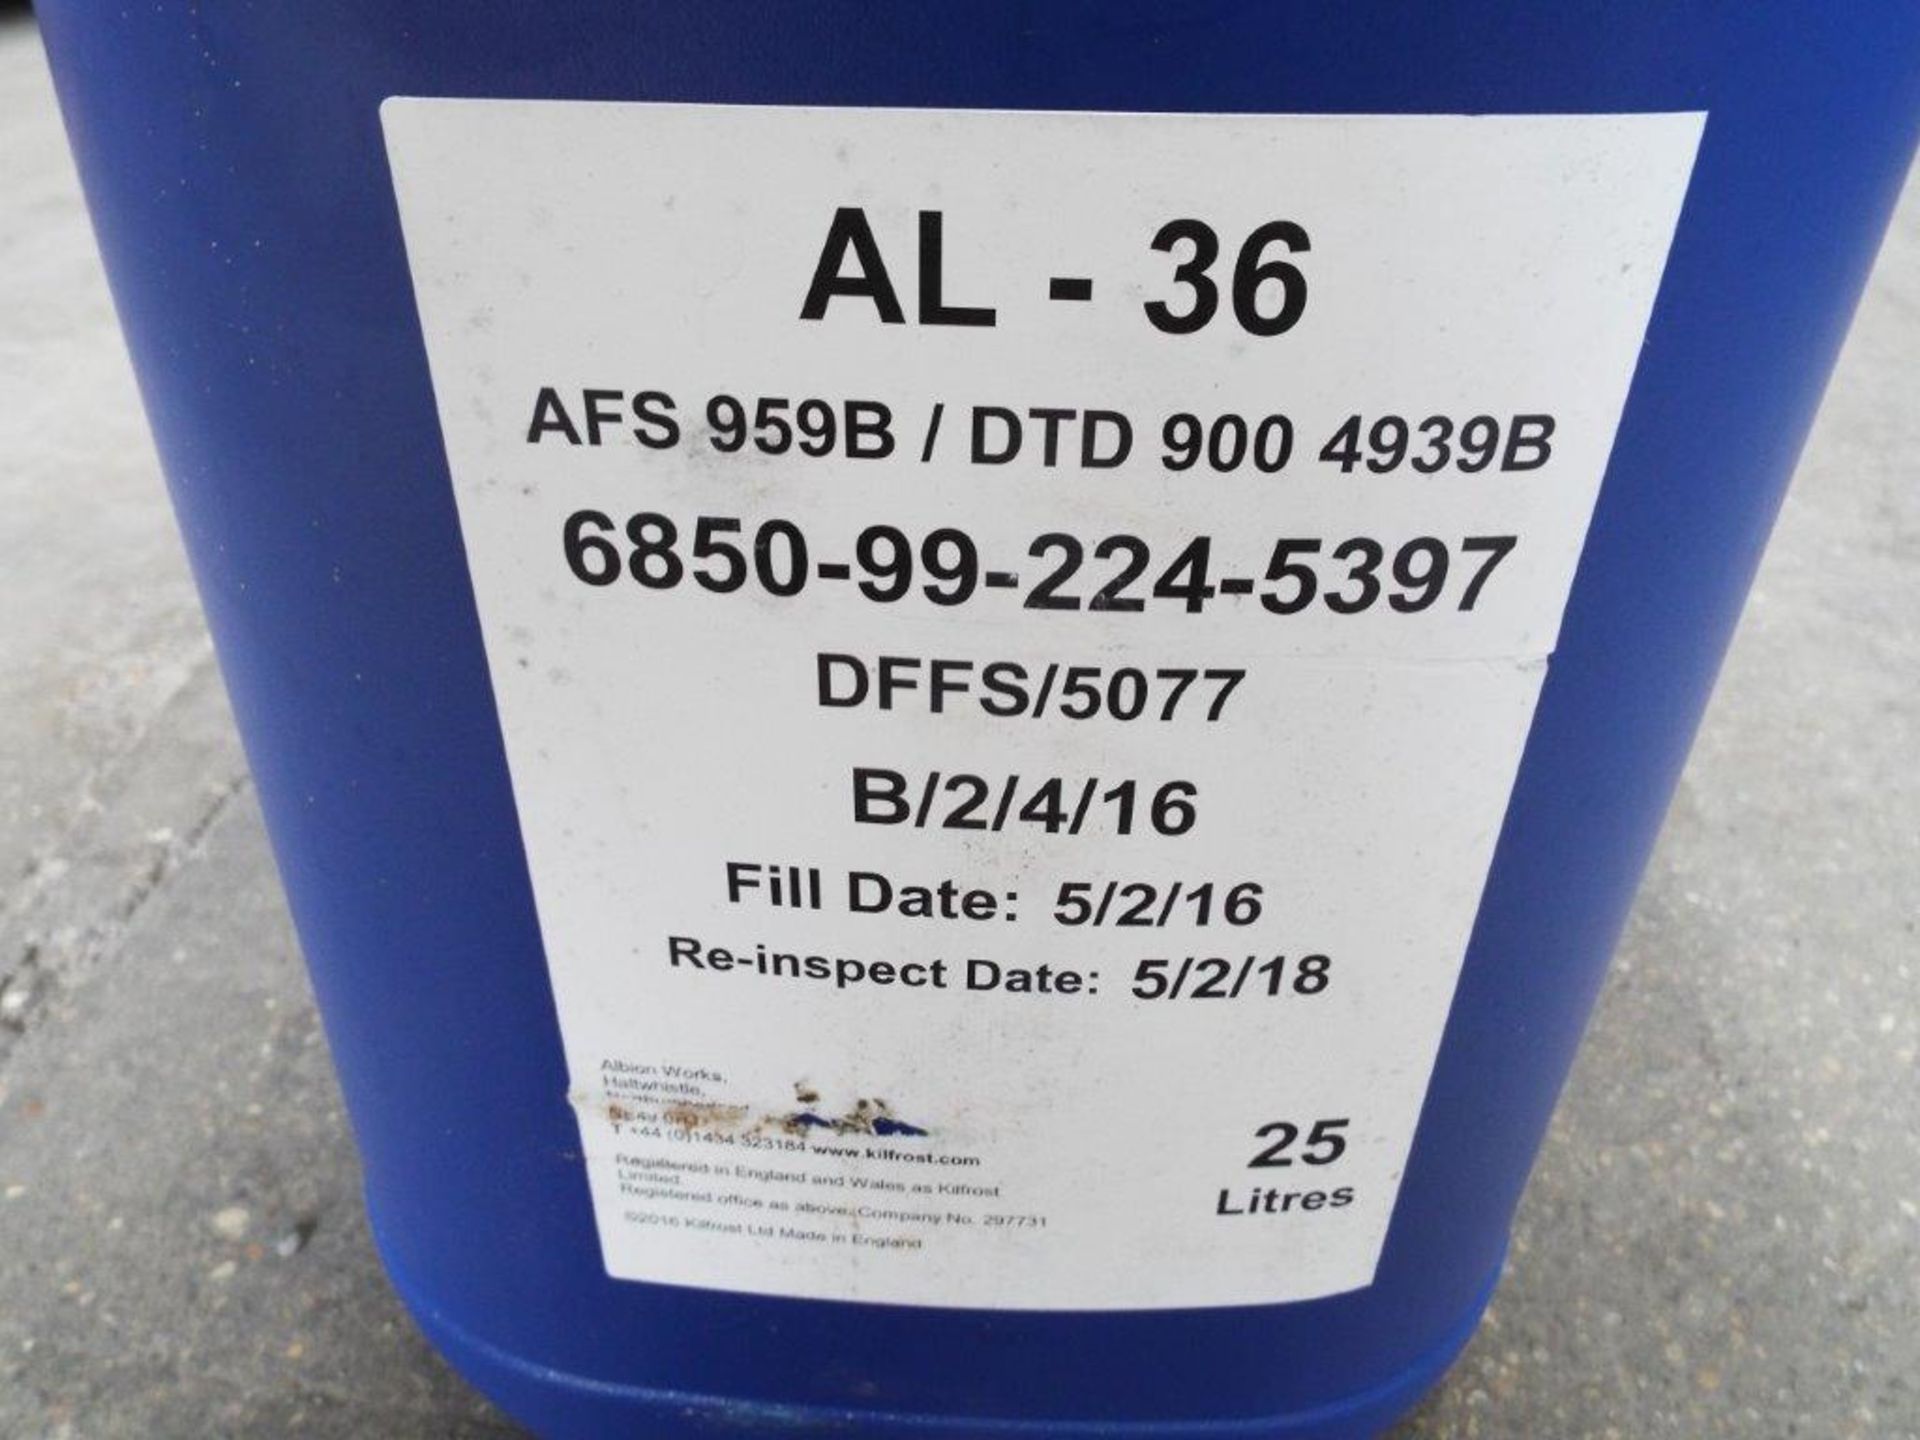 3 x Unissued 25L Drums of AL-36 Aviation Washer Fluid / De Icer - Image 3 of 4